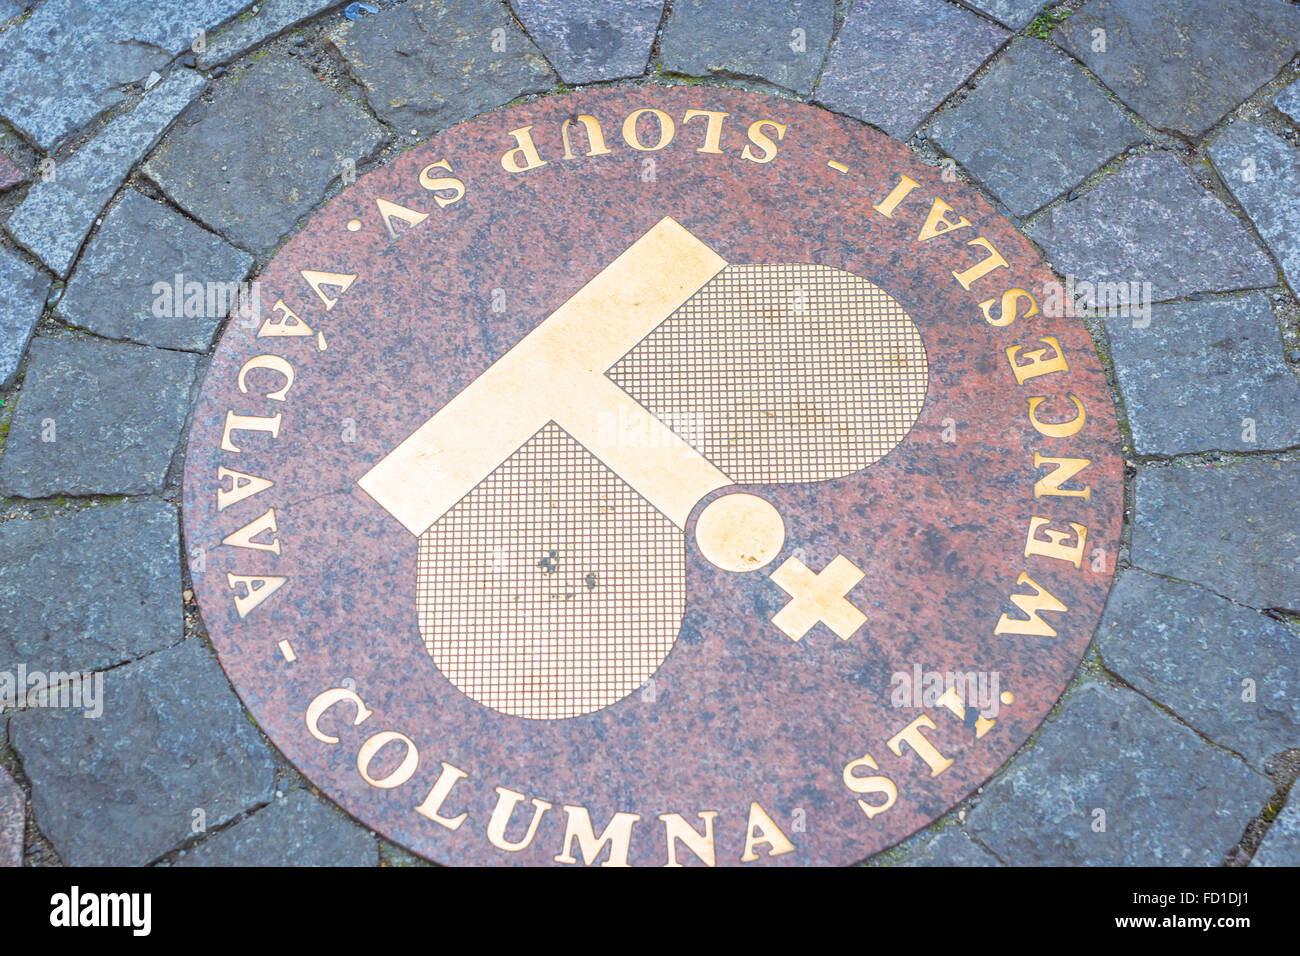 PRAGUE, RÉPUBLIQUE TCHÈQUE - 27 août 2015 : dalle ronde de granit rouge avec une couronne d'or, Vieille Ville, Prague, République Tchèque Banque D'Images